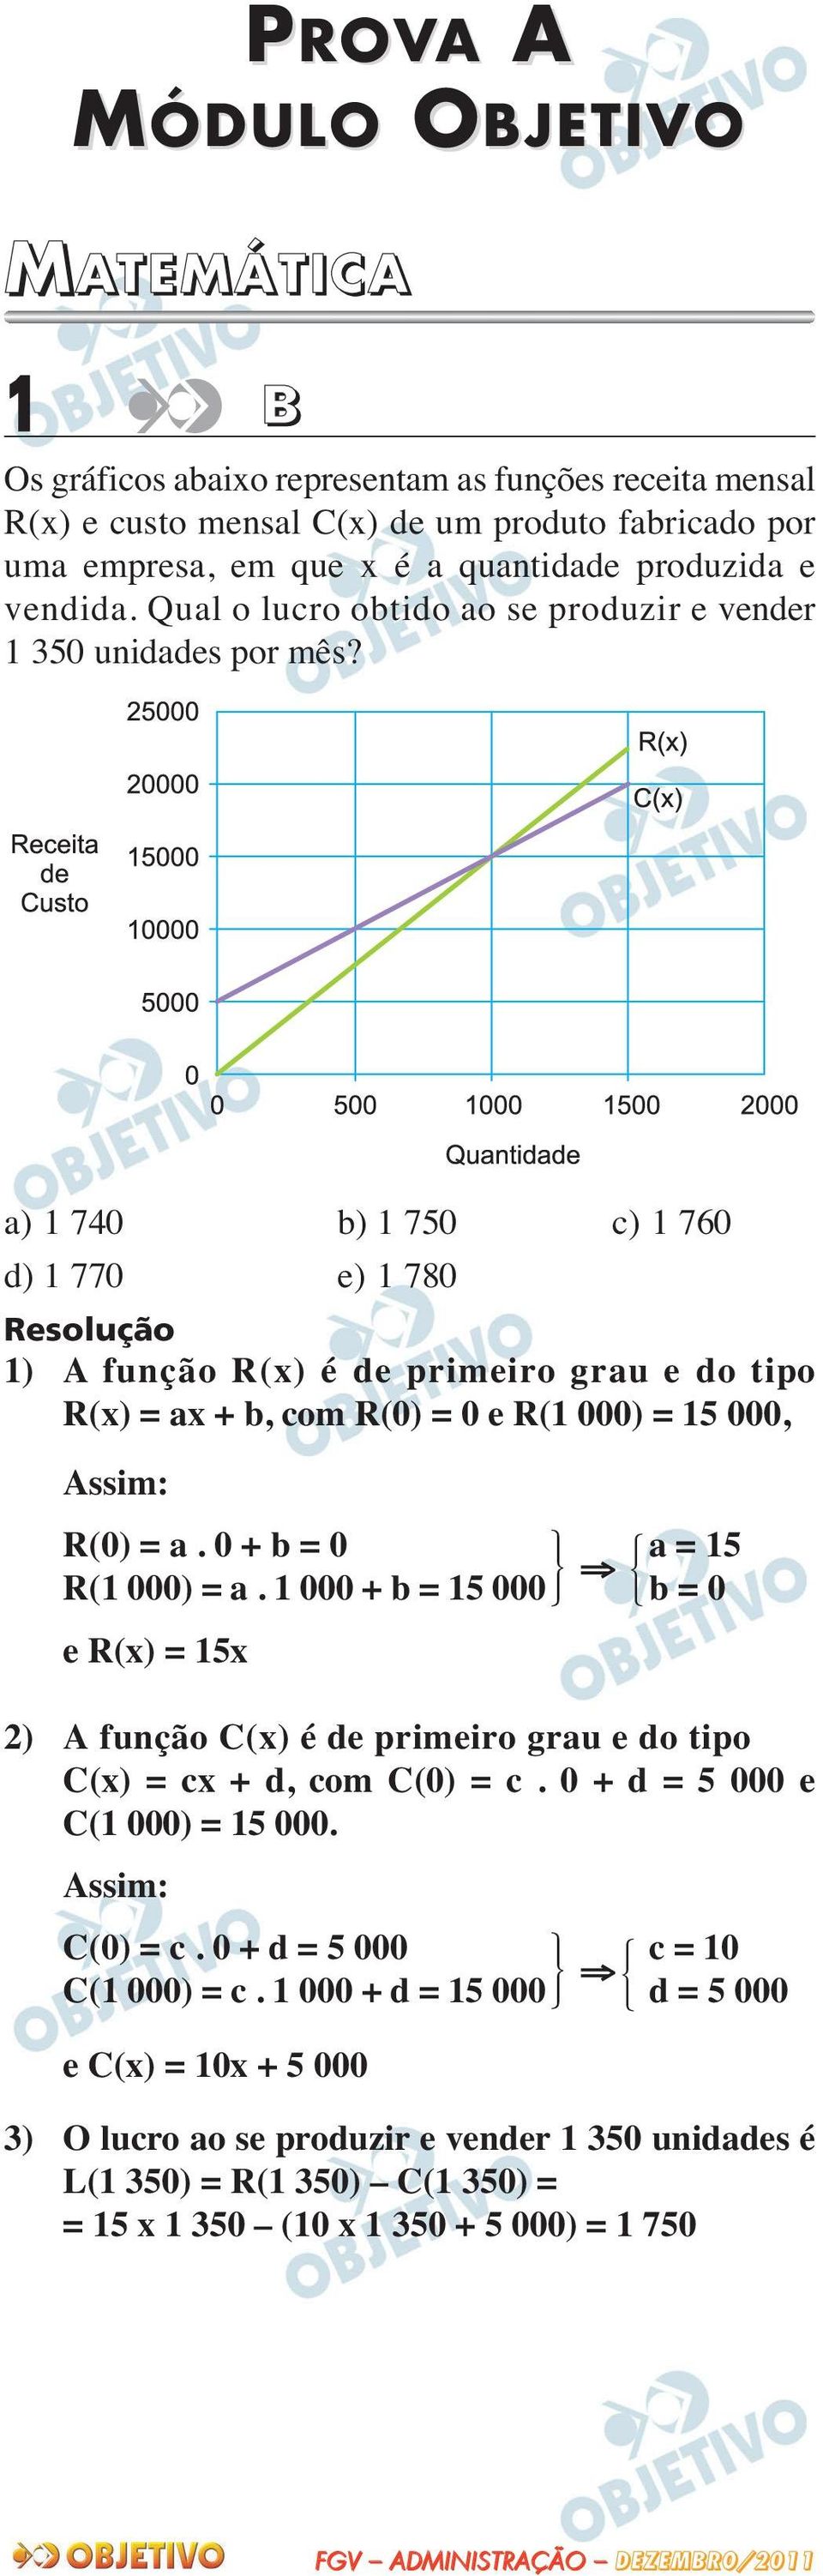 a) 1 740 b) 1 750 c) 1 760 d) 1 770 e) 1 780 1) A função R(x) é de primeiro grau e do tipo R(x) = ax + b, com R(0) = 0 e R(1 000) = 15 000, Assim: R(0) = a. 0 + b = 0 R(1 000) = a.